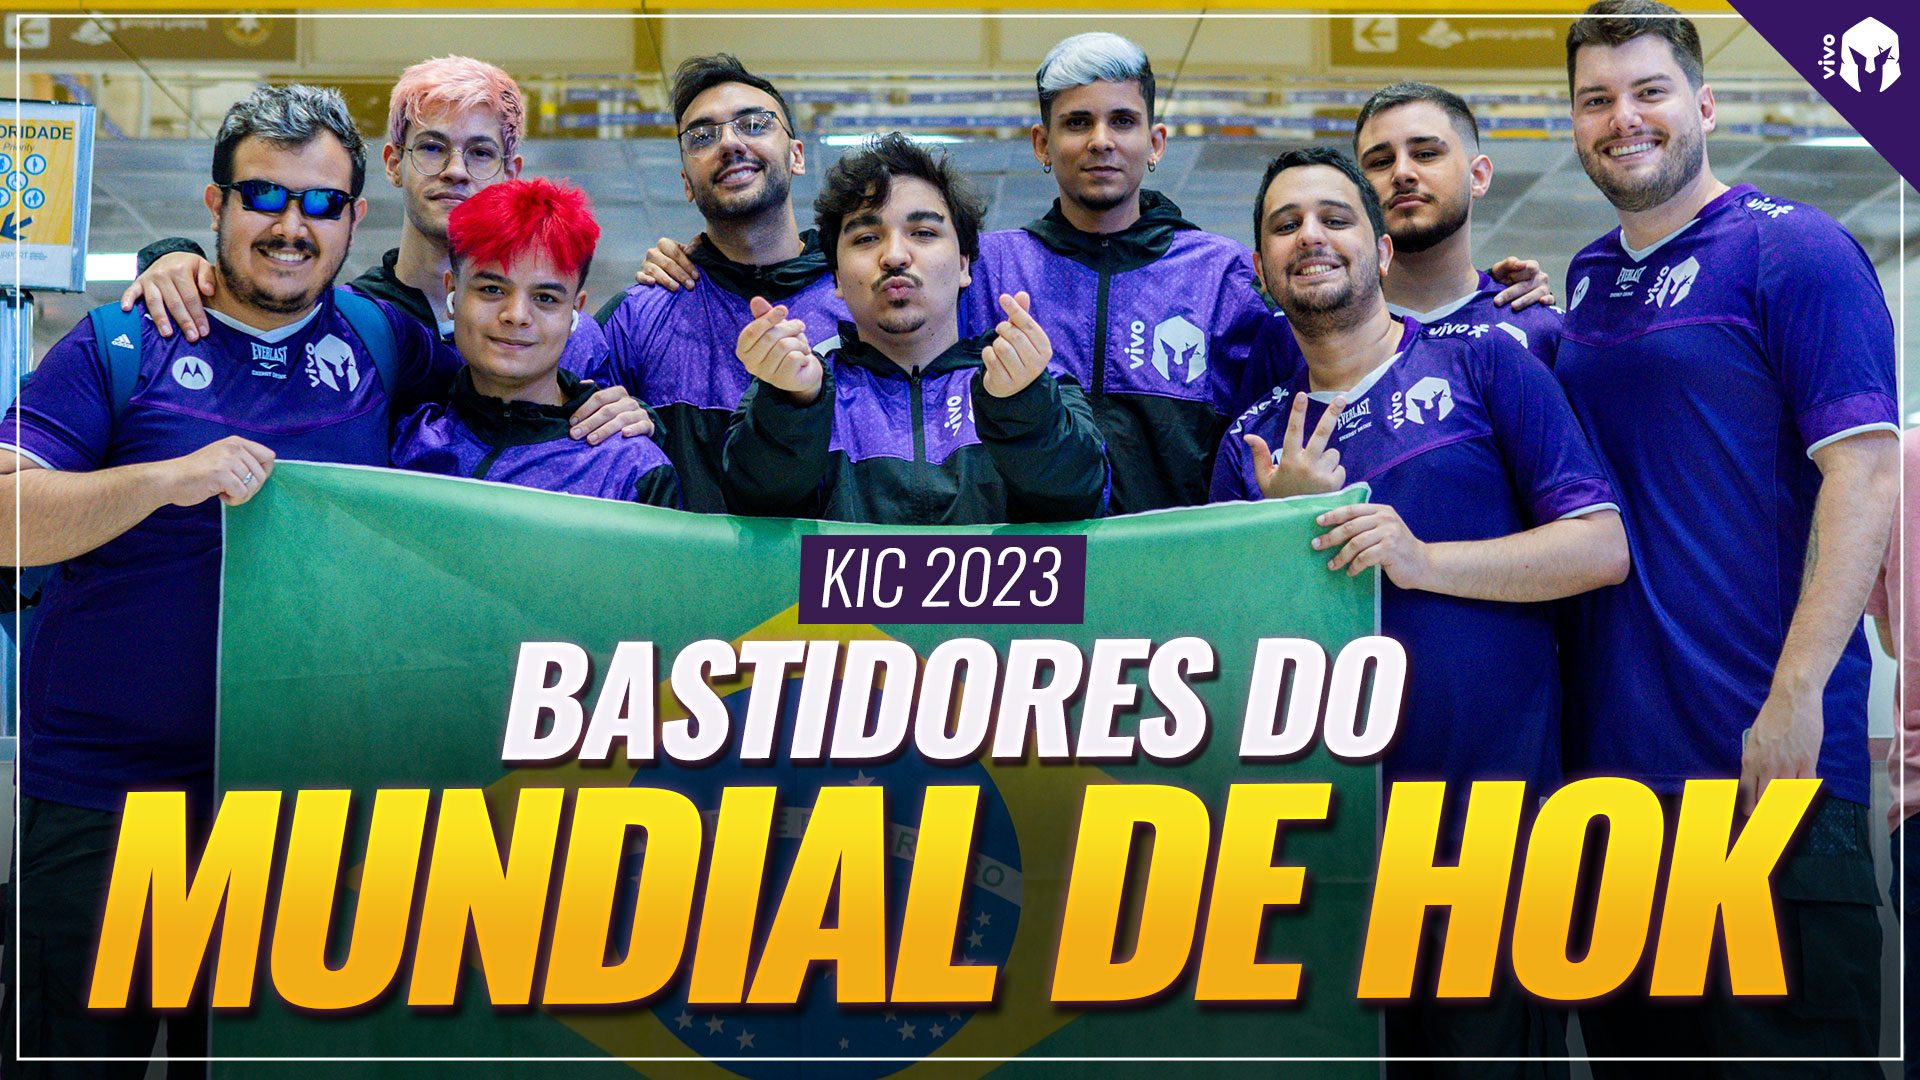 BASTIDORES DO KIC 2023 | MUNDIAL DE HONOR OF KINGS